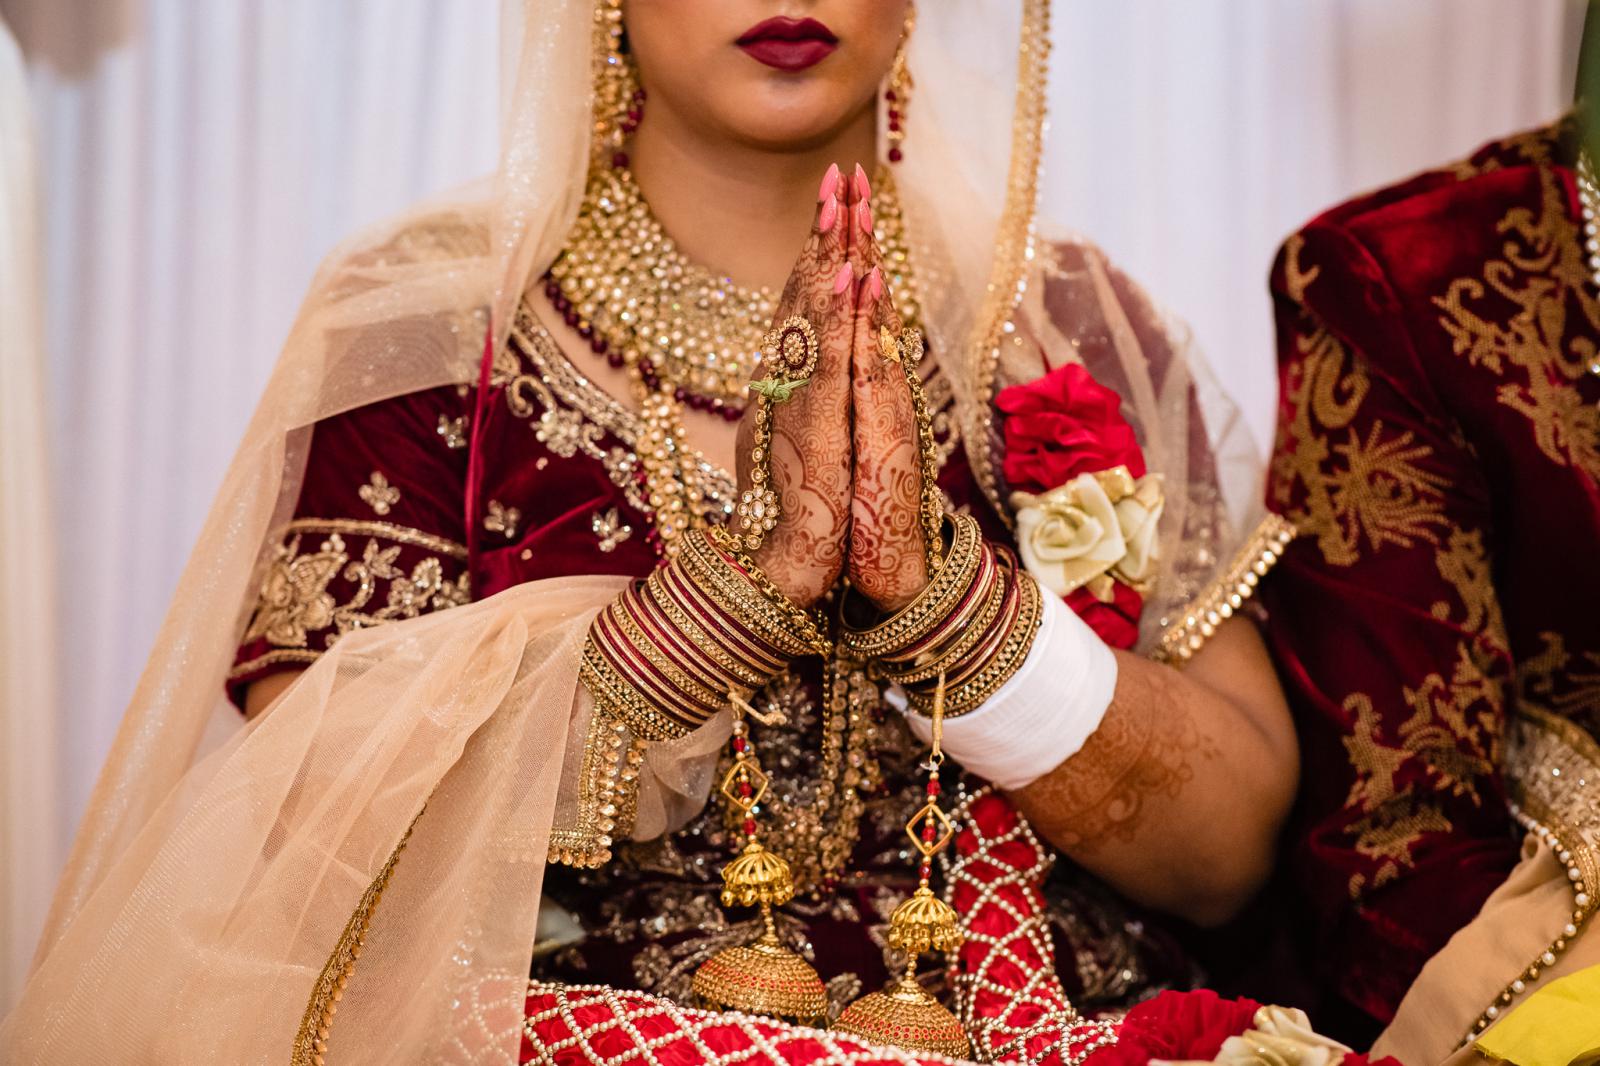 huwelijksceremonie hindoestaanse bruiloft door trouwfotograaf rey events almere